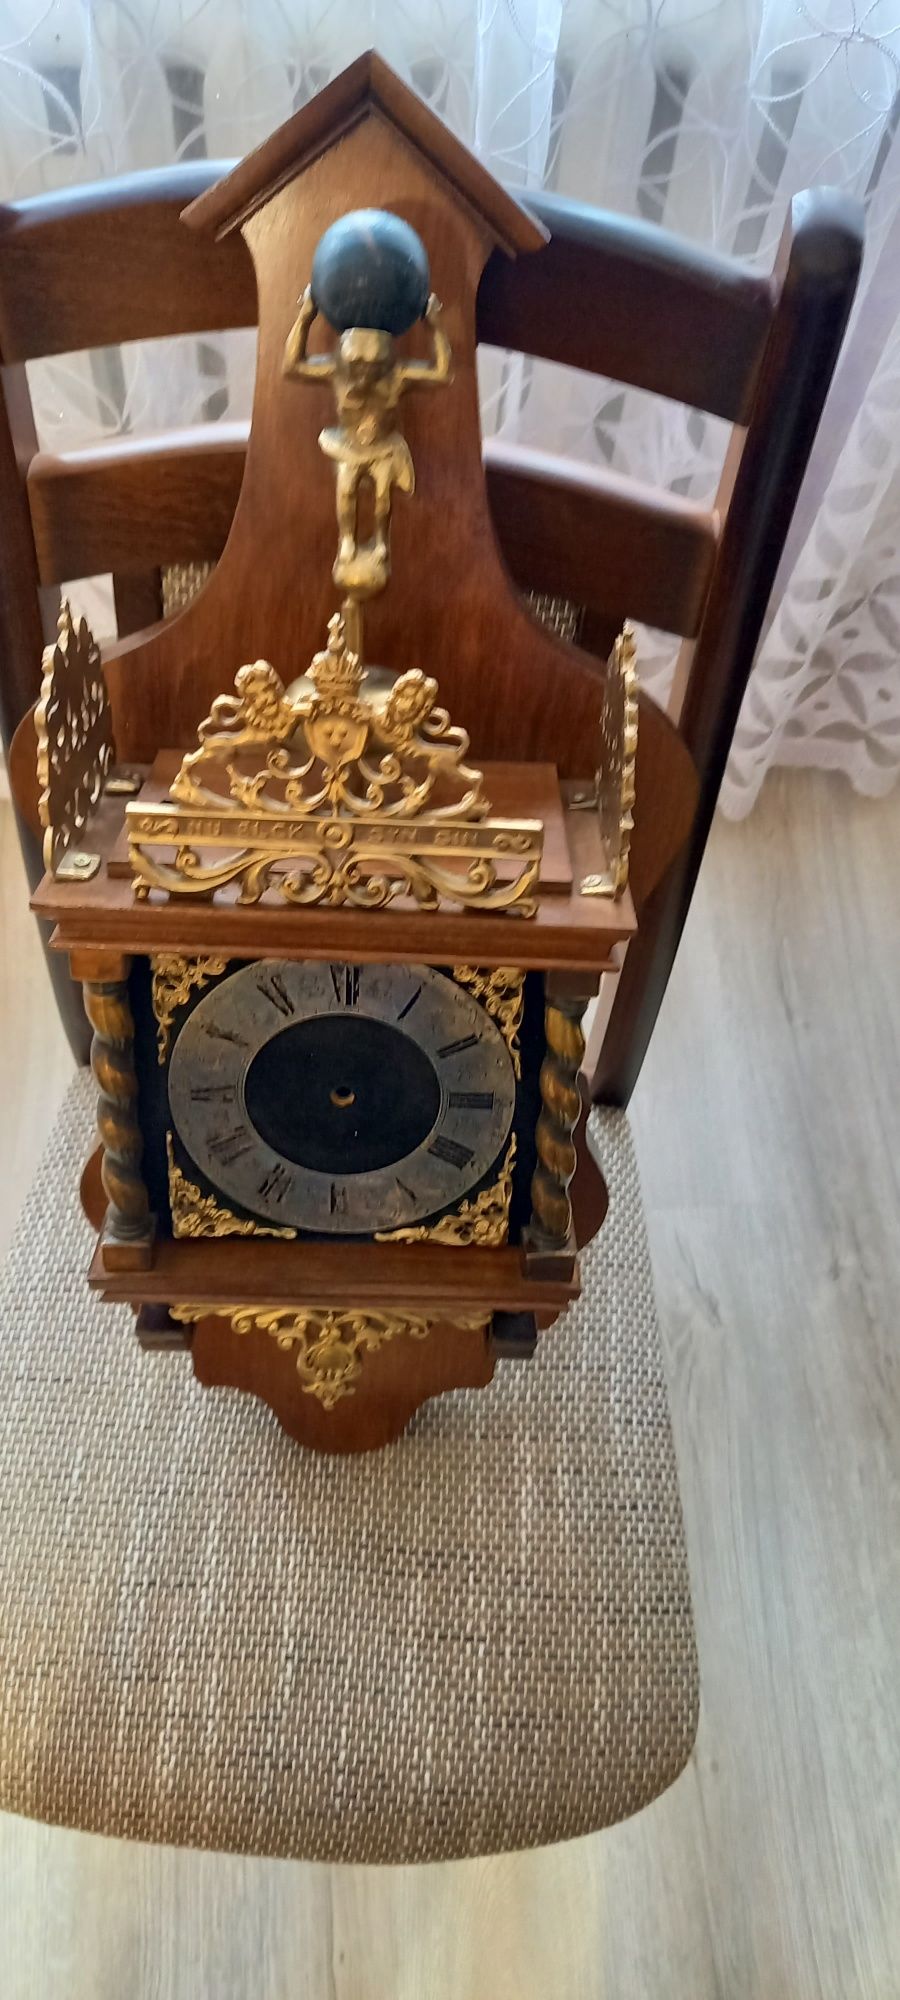 Skrzynka do zegara typu holender wraz z ozdobami